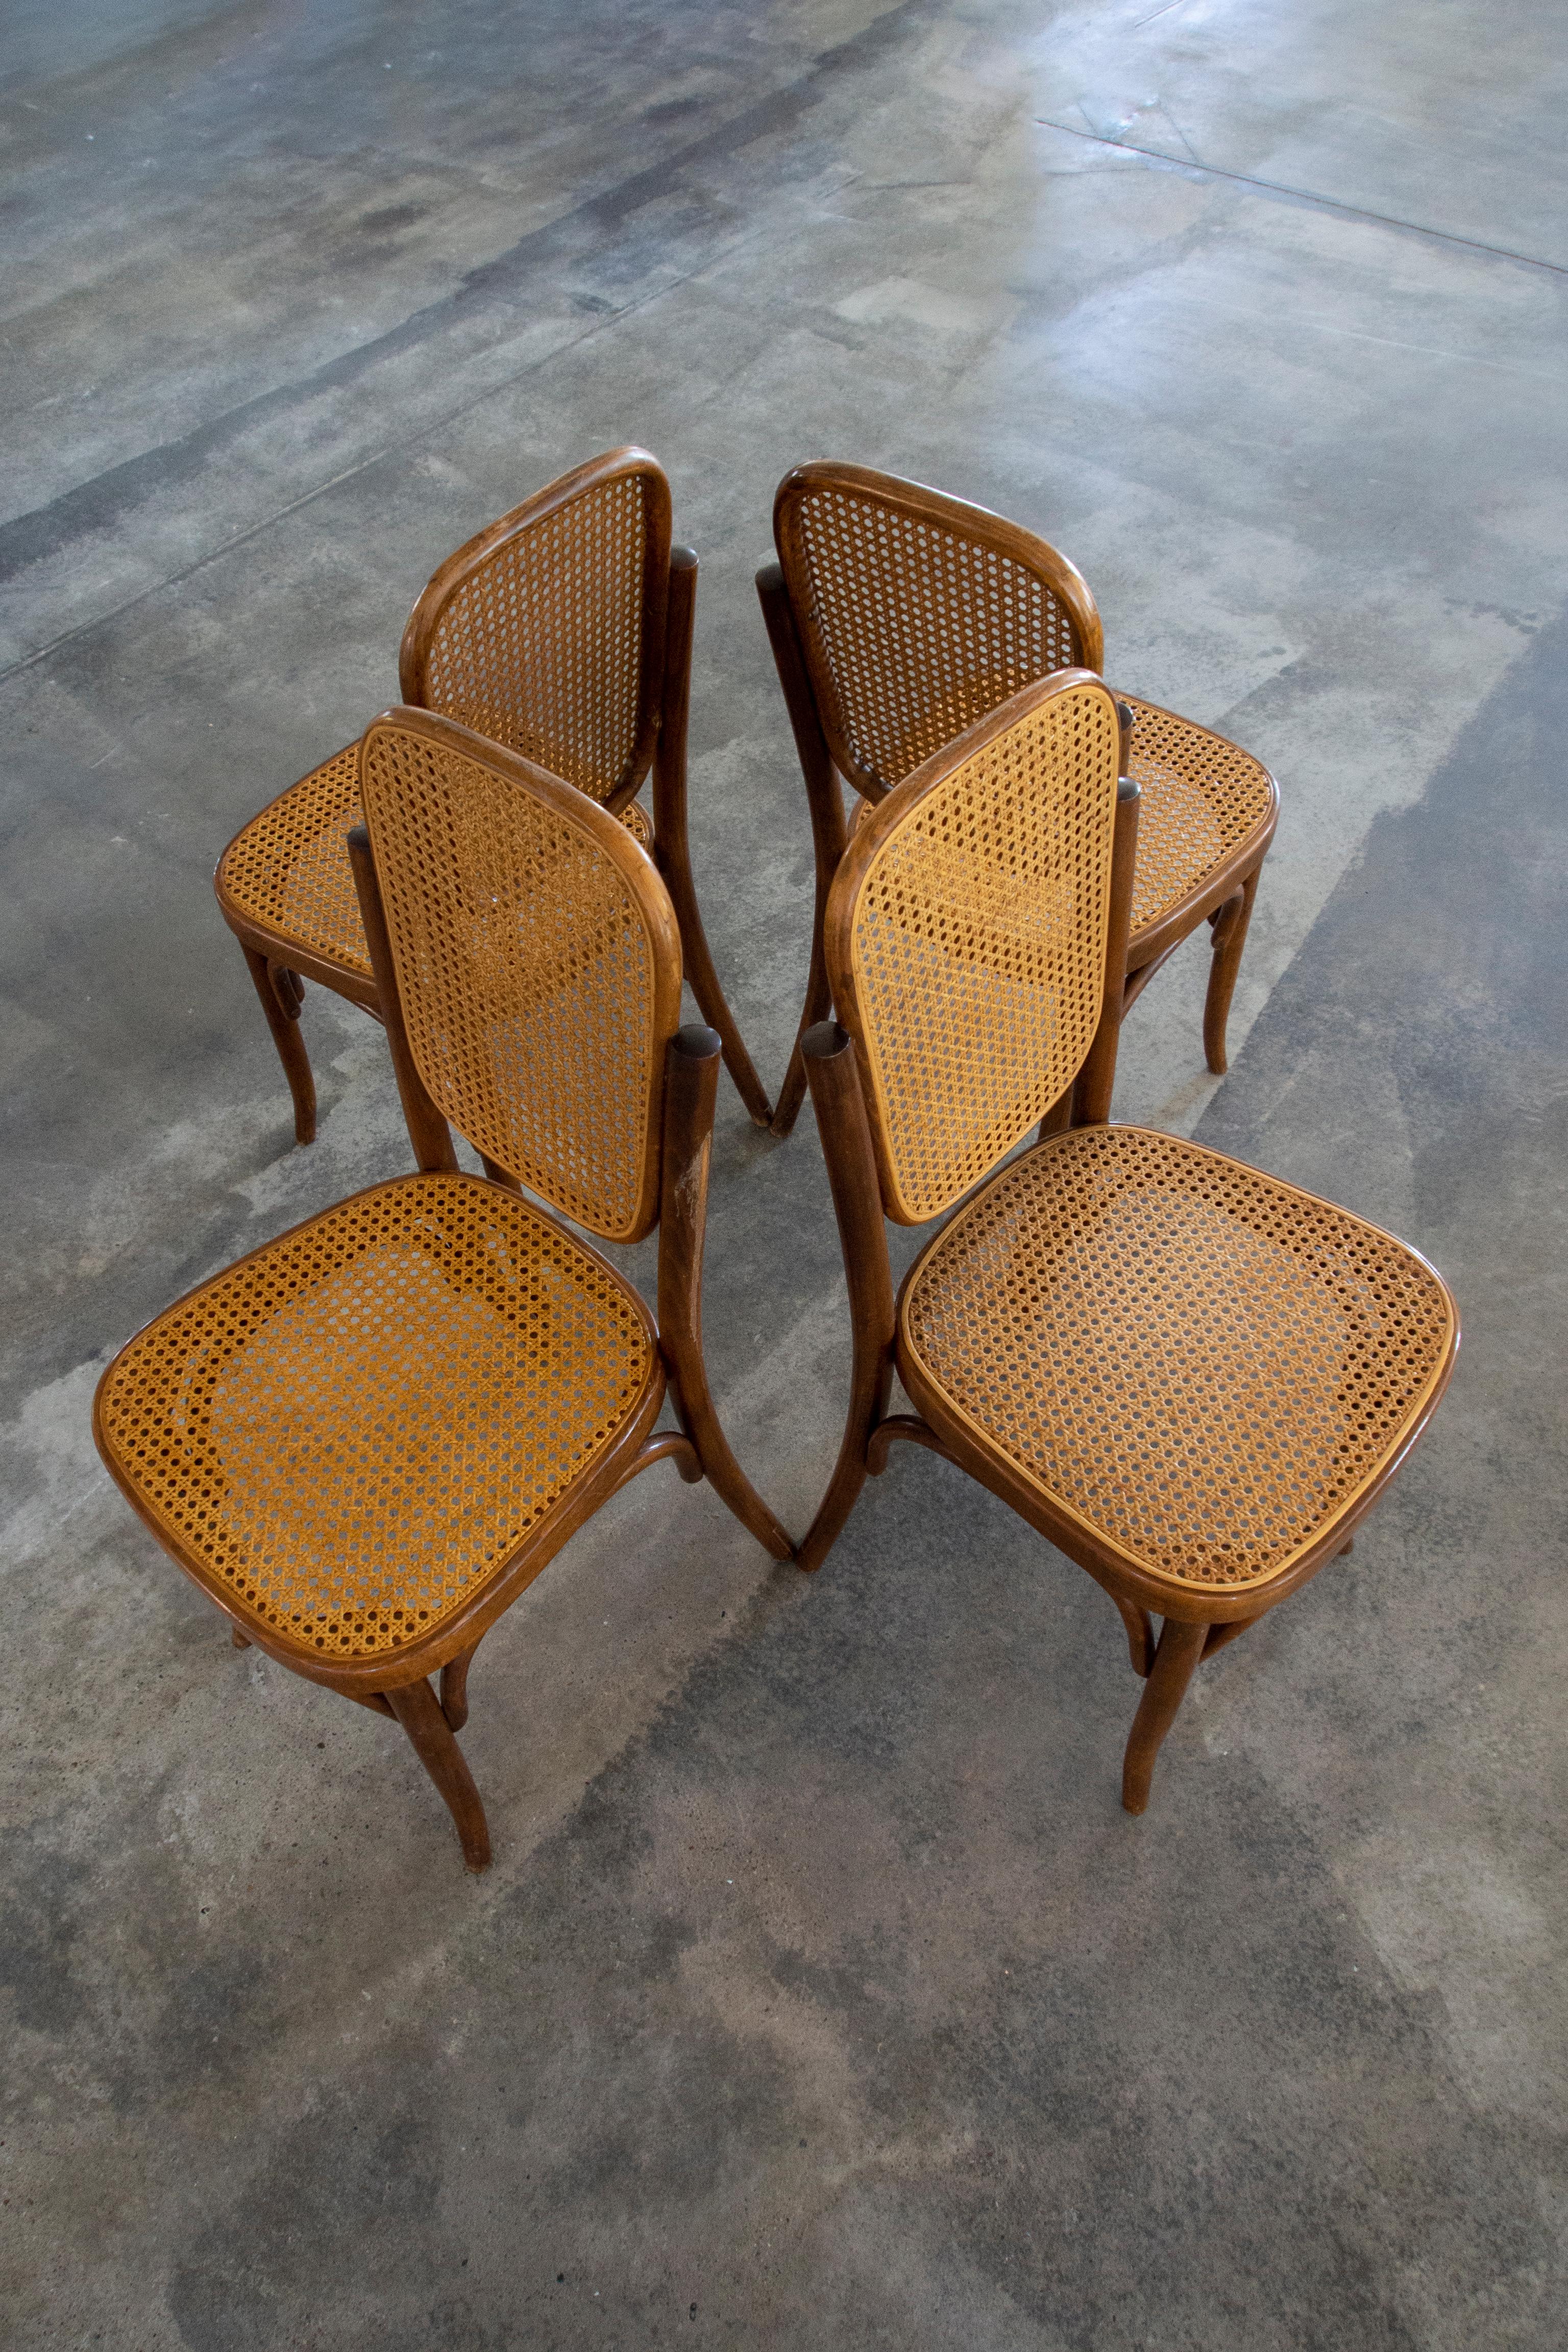 In dieser Auflistung finden Sie einen Satz von 4 Esszimmerstühlen aus Korbgeflecht, hergestellt von Mundus Jugoslawien, in der Zeit nach der Trennung von Mundus und Thonet. Die Stühle sind aus Rattan und Bugholz gefertigt. Das Rattan der Sitze und